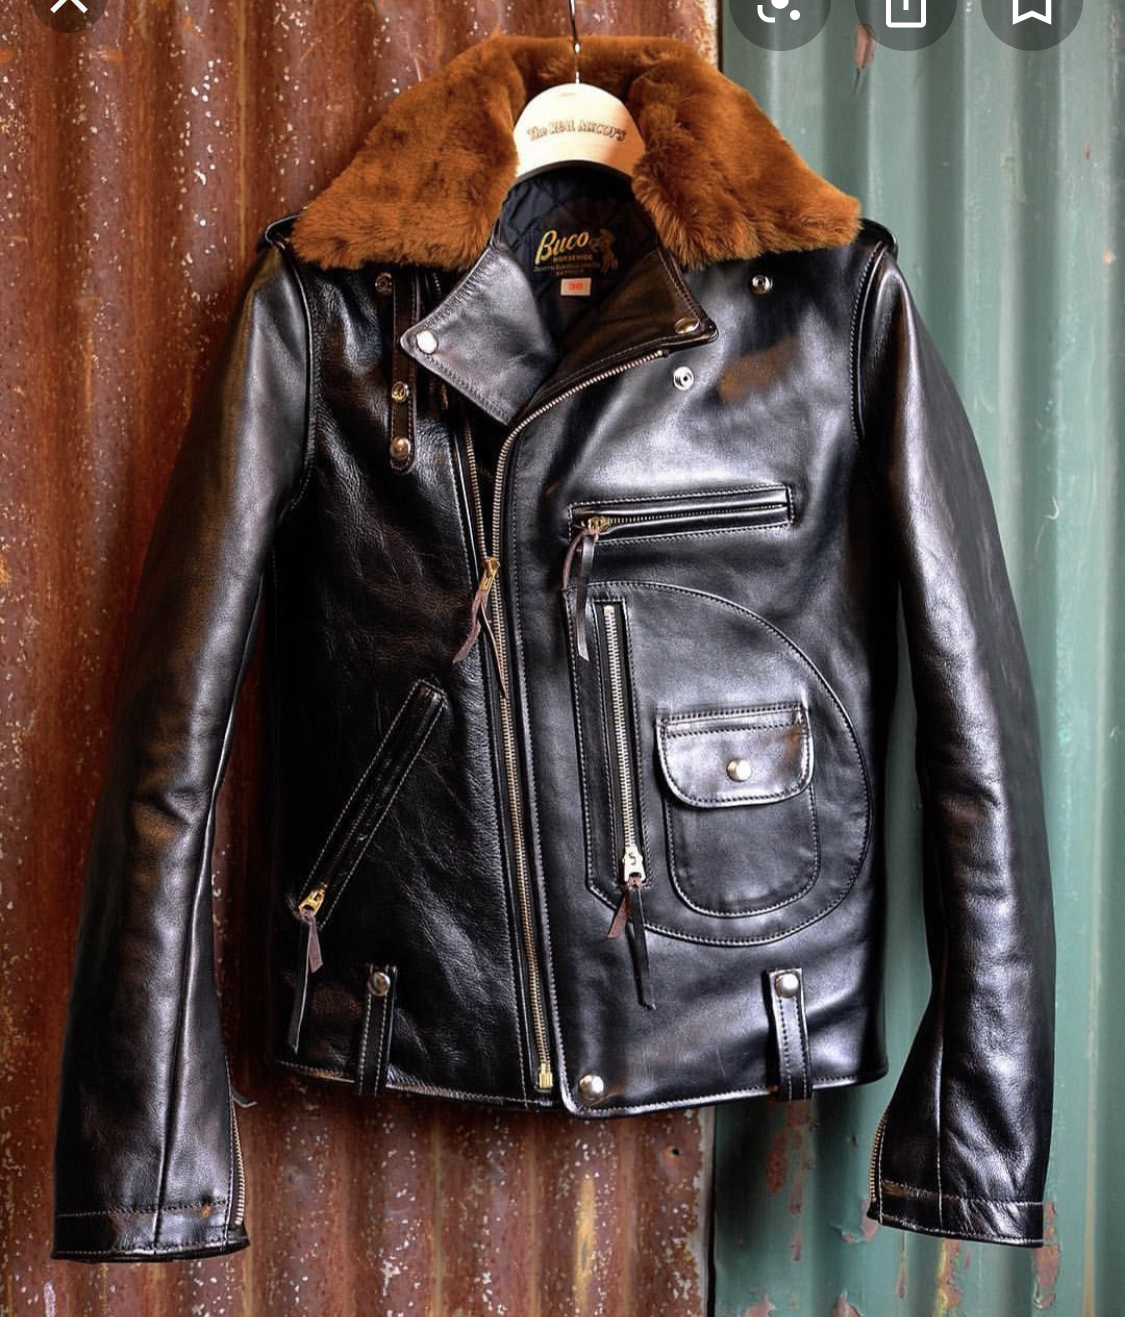 Recommendation on Leather Jacket (Diamond Dave vs Aero) | The Fedora Lounge